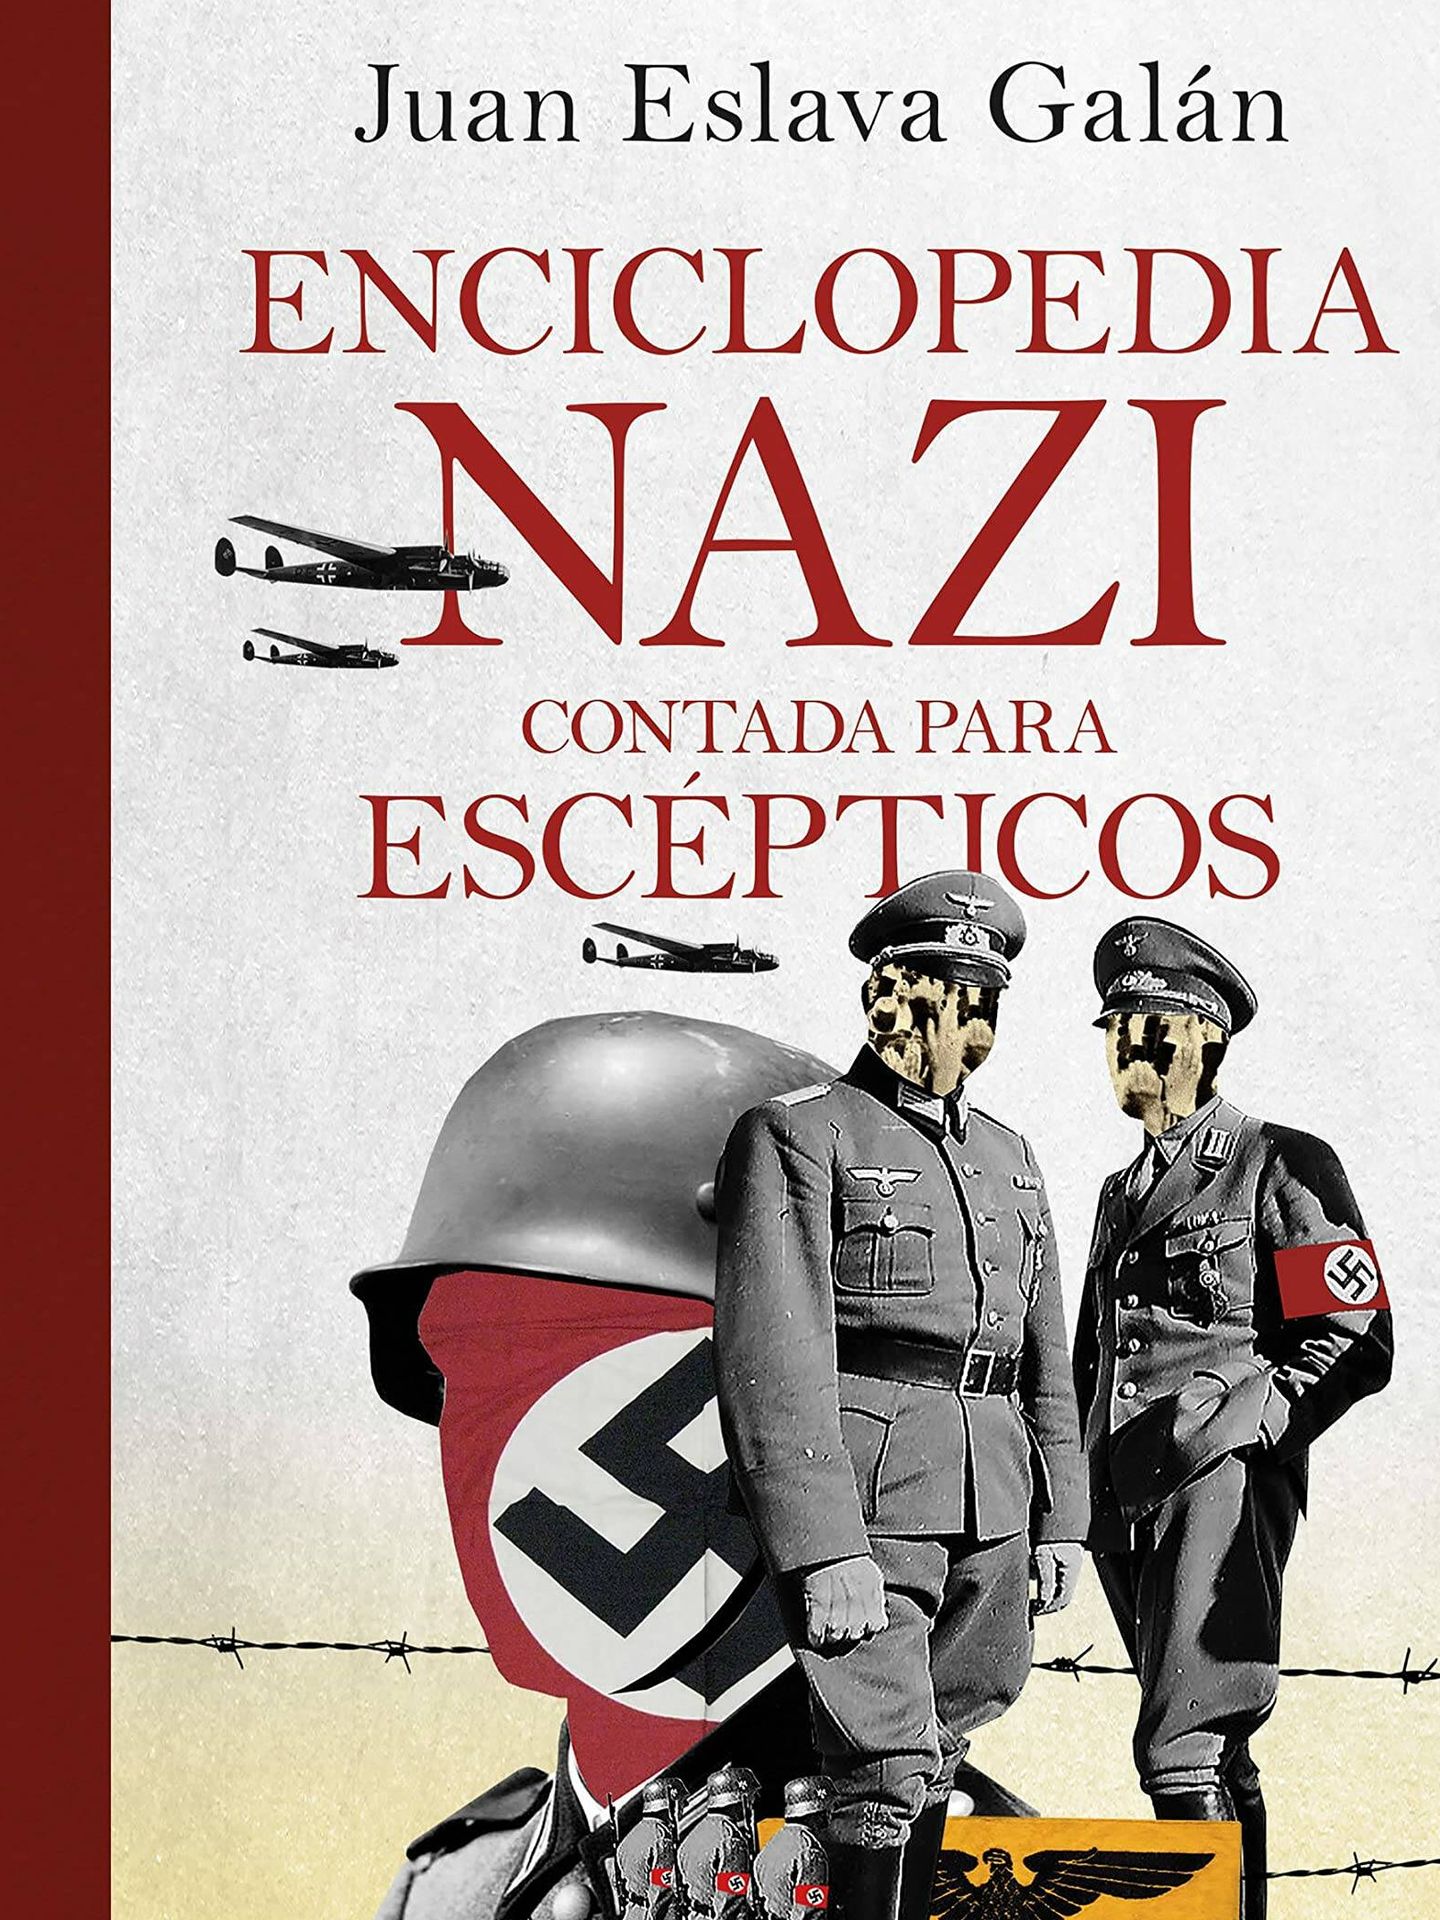 'Enciclopedia nazi' (Planeta).